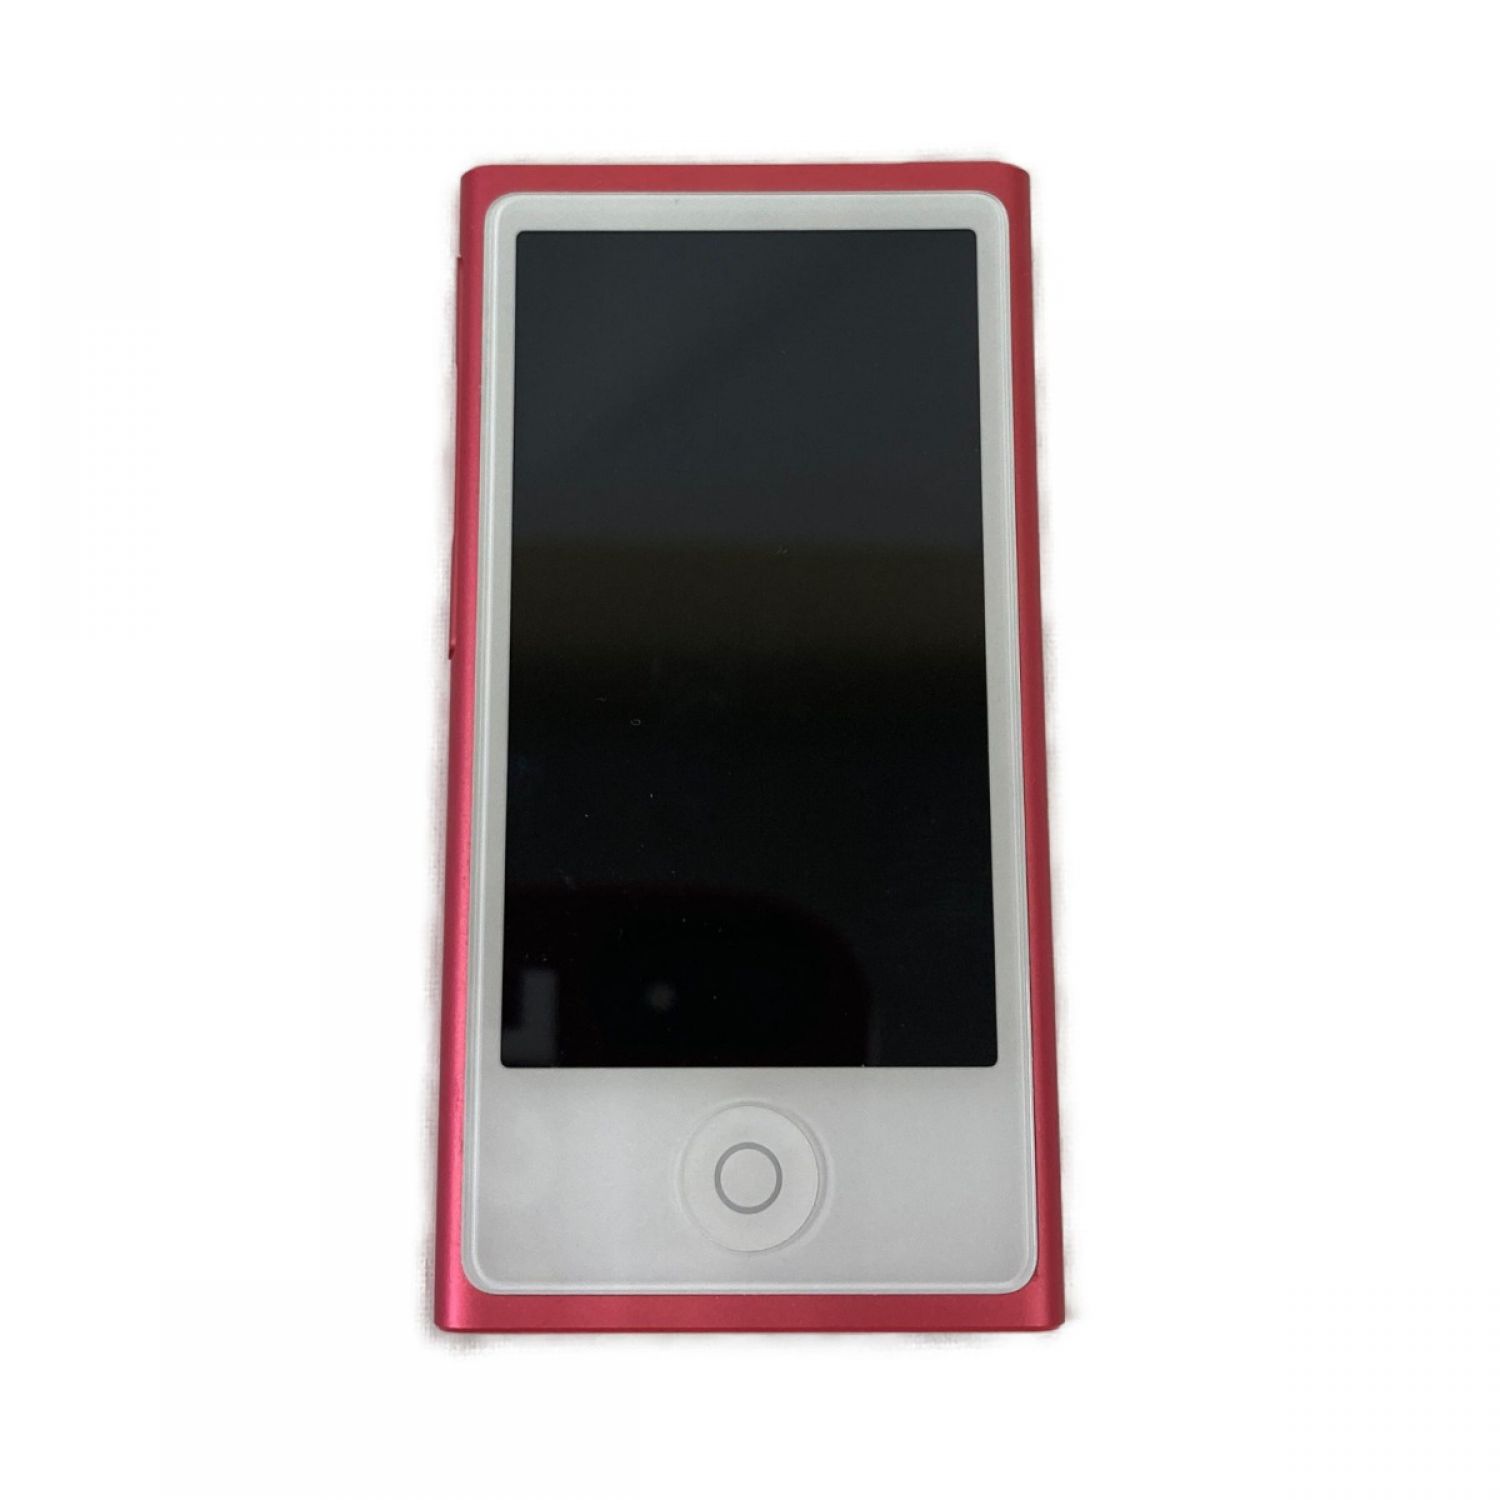 【新品未使用】iPod nano(第7世代)16GB ピンク